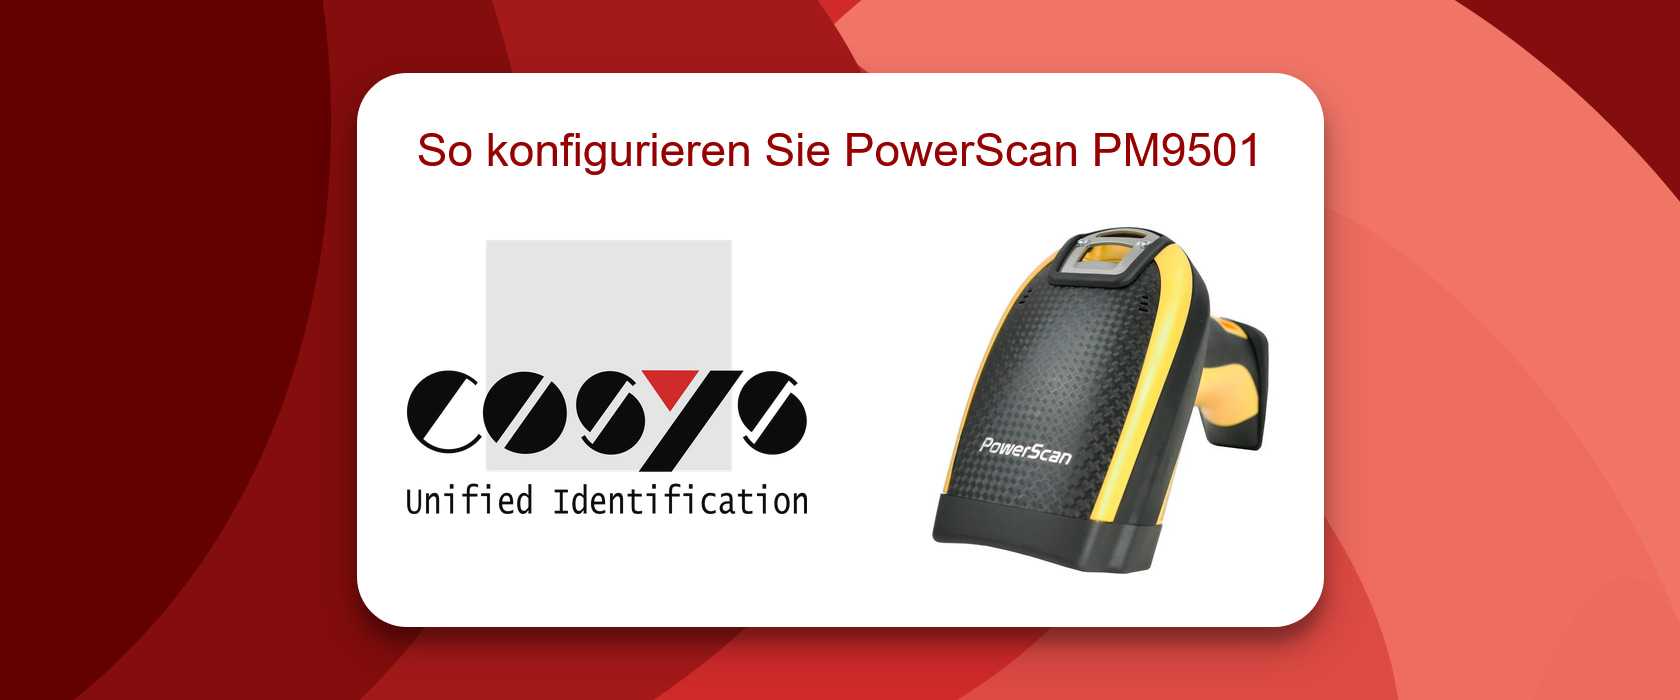 Konfigurieren sie den PowerScan PM9501